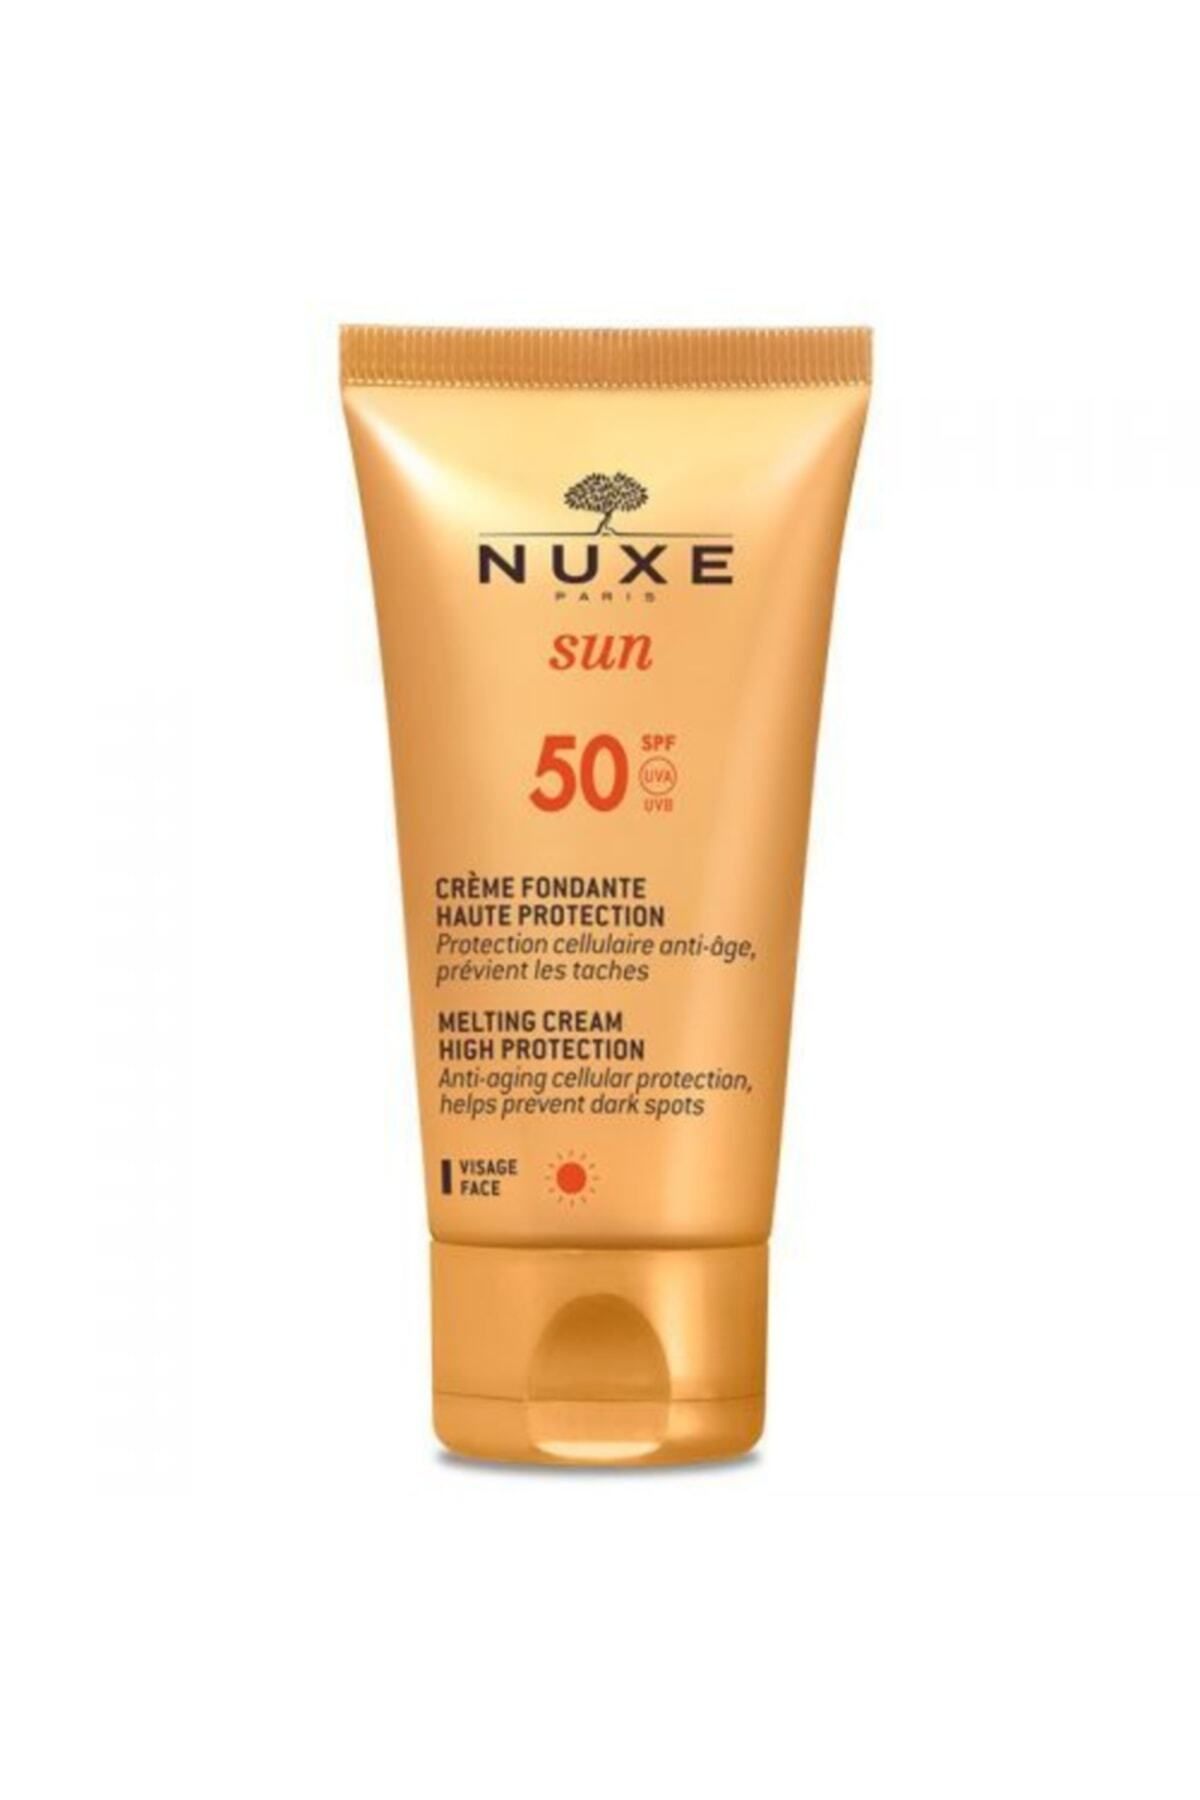 Nuxe Sun Creme Fondante Visage Haute Protection Spf50 50ml 3264680006999